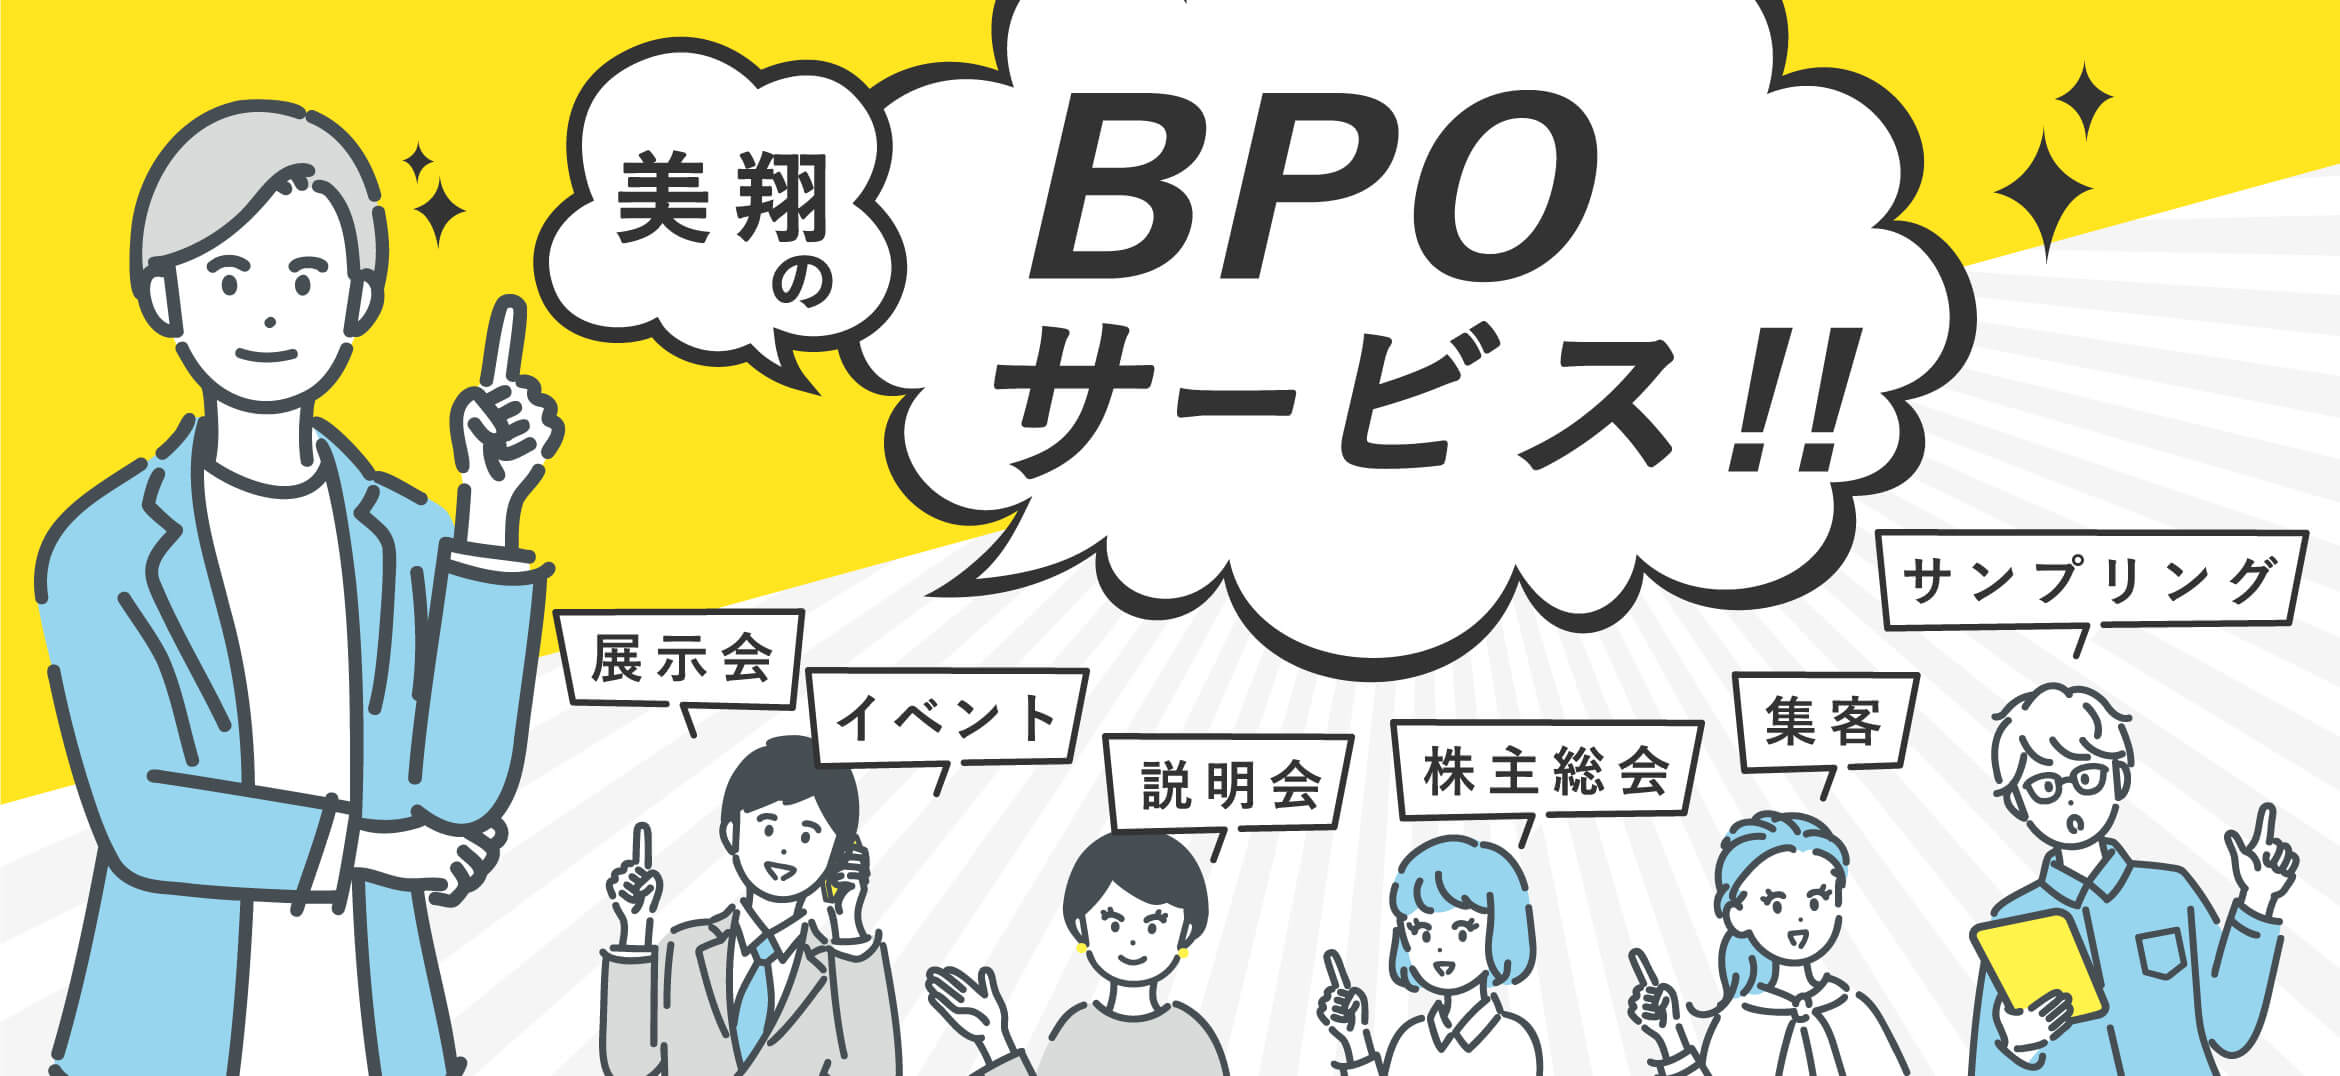 美翔のBPOサービス!!展示会・イベント・説明会・株主総会・集客・サンプリング